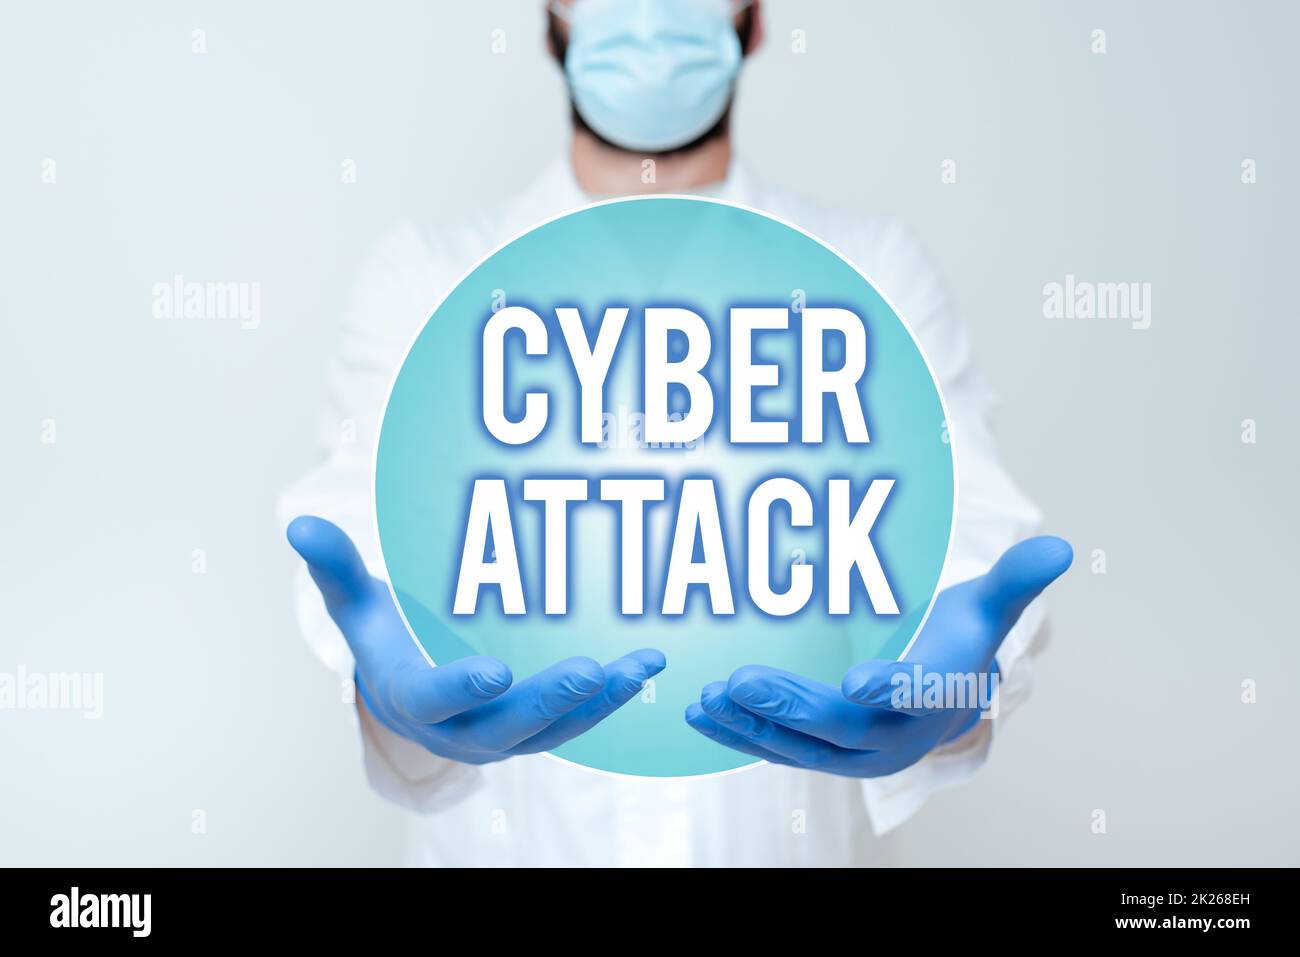 Konzeptionelle Darstellung Cyber Attack. Wort geschrieben über einen Versuch von Hackern, einen Computersystemwissenschaftler zu zerstören, der neue Technologie demonstriert, Doktor gibt medizinische Beratung Stockfoto